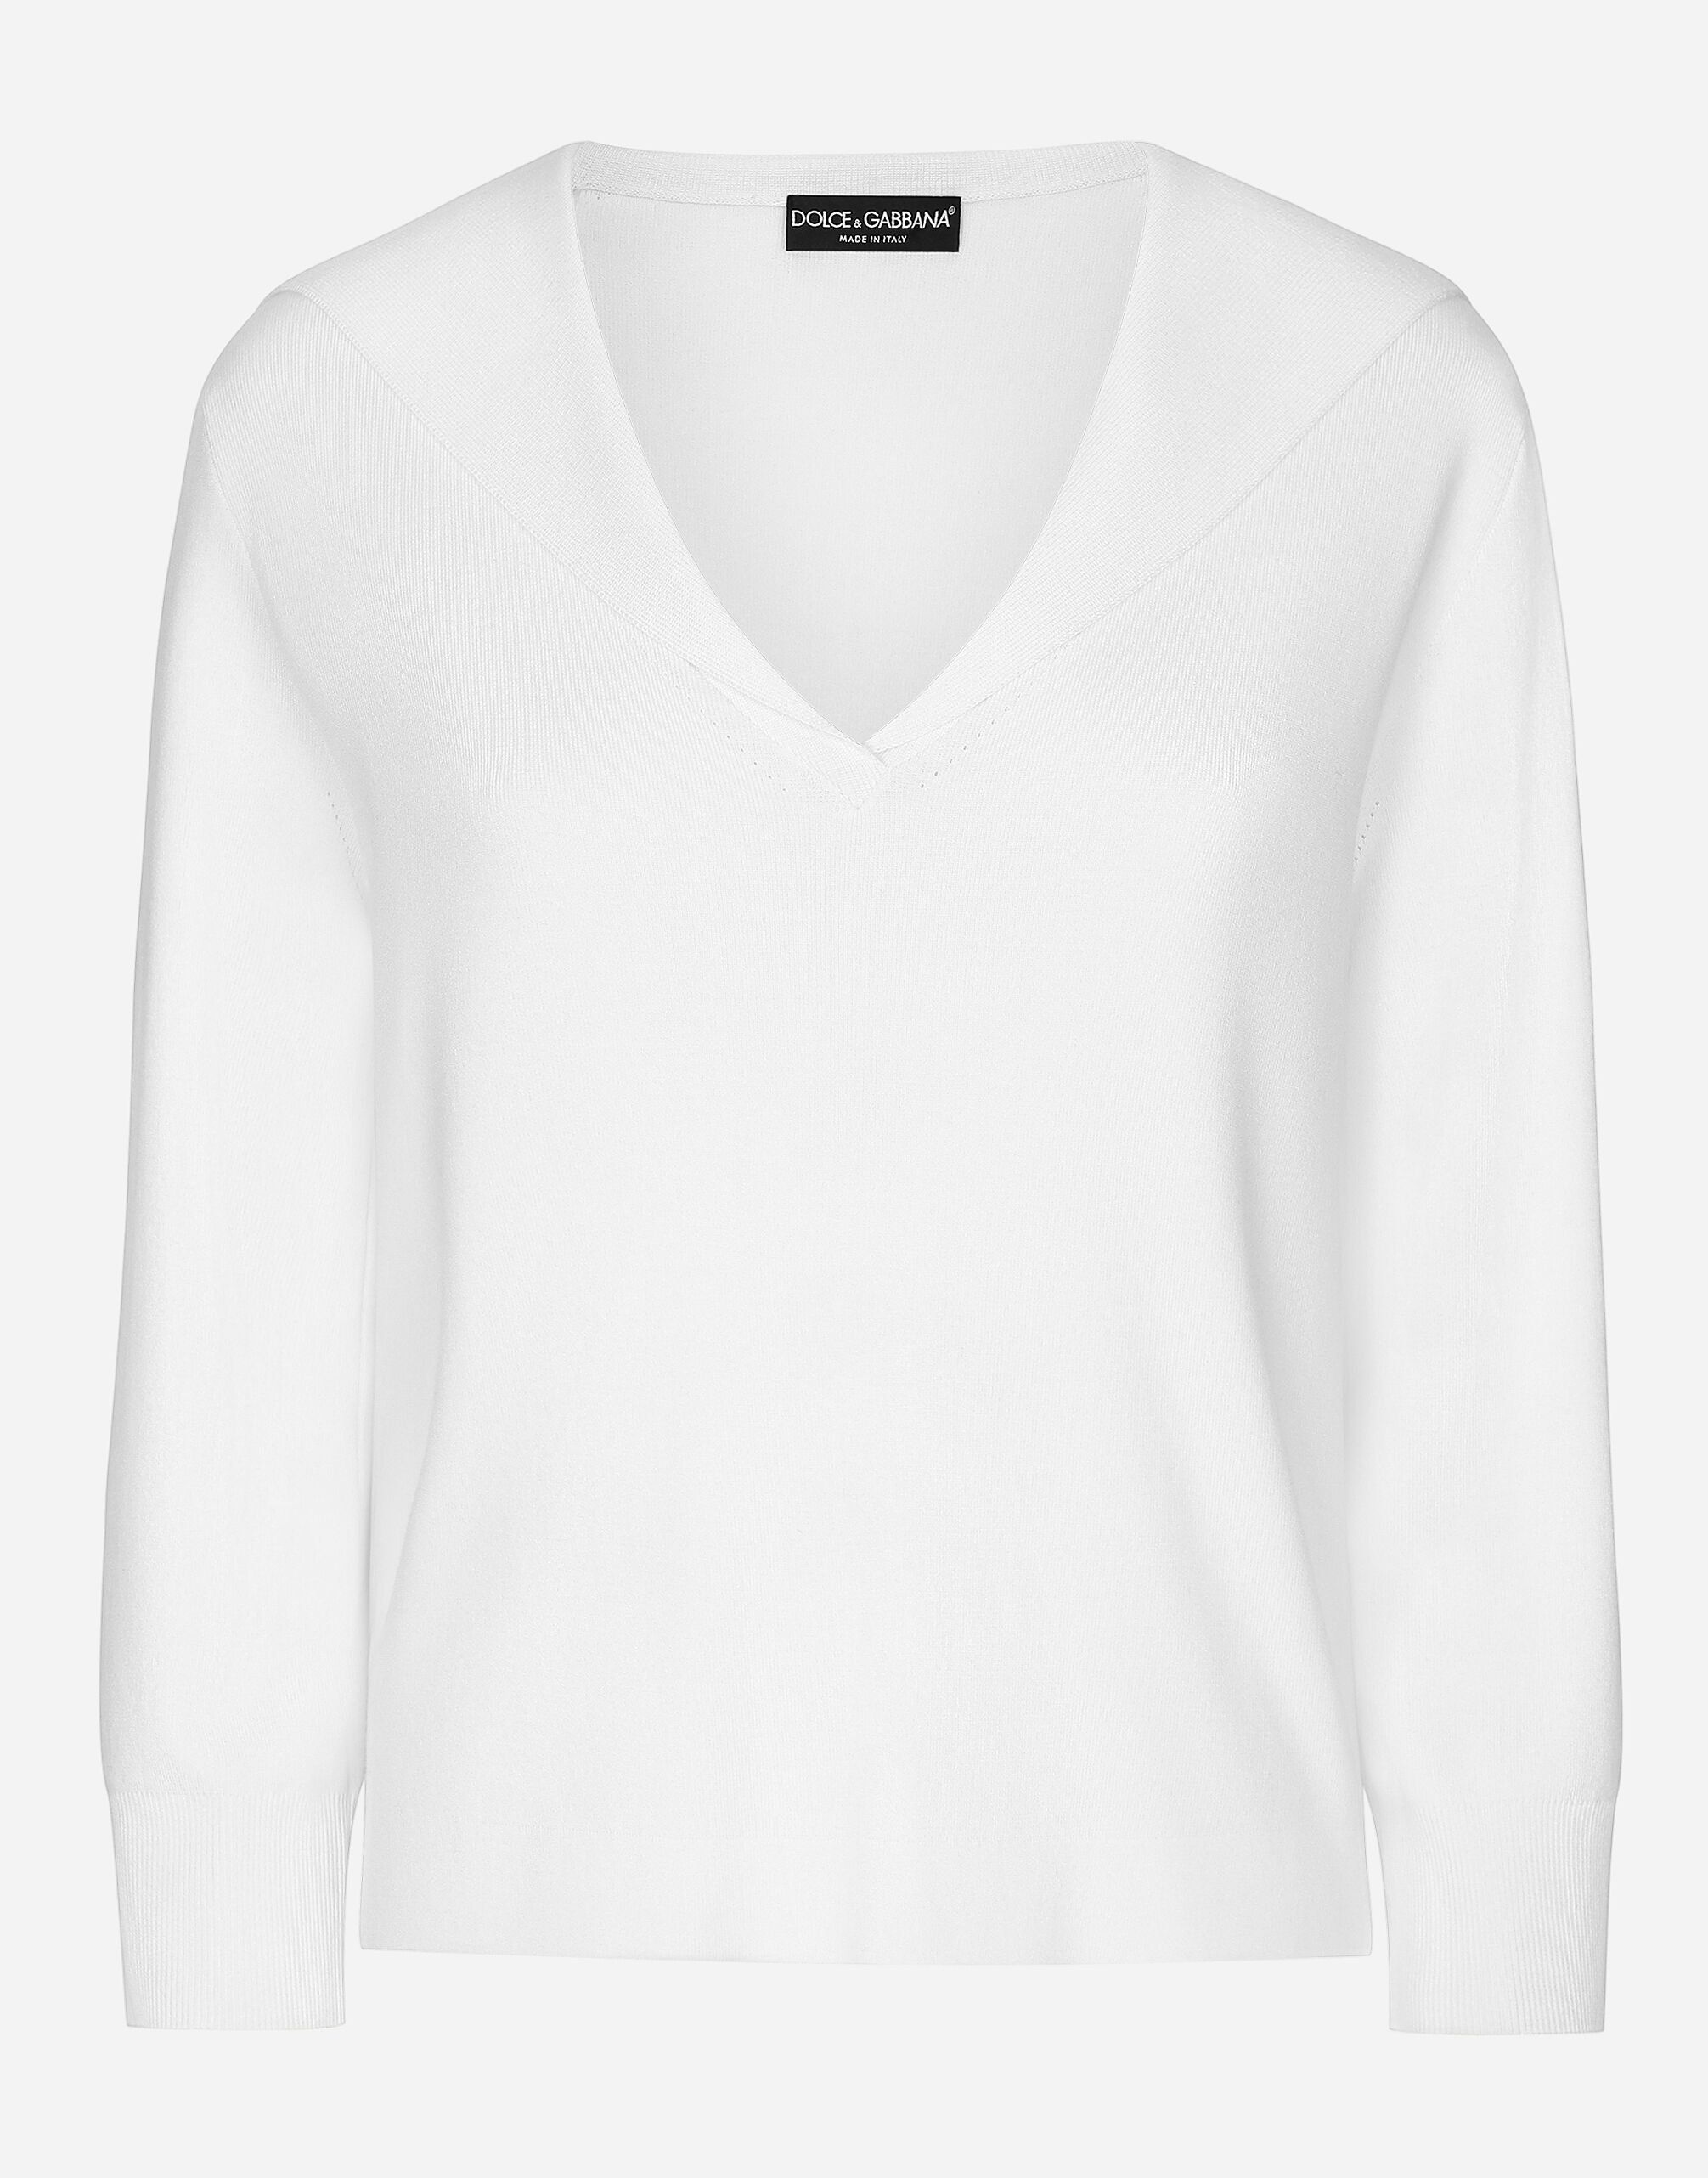 Dolce & Gabbana Viscose sweater with sailor collar White F0E1XTFJTBV